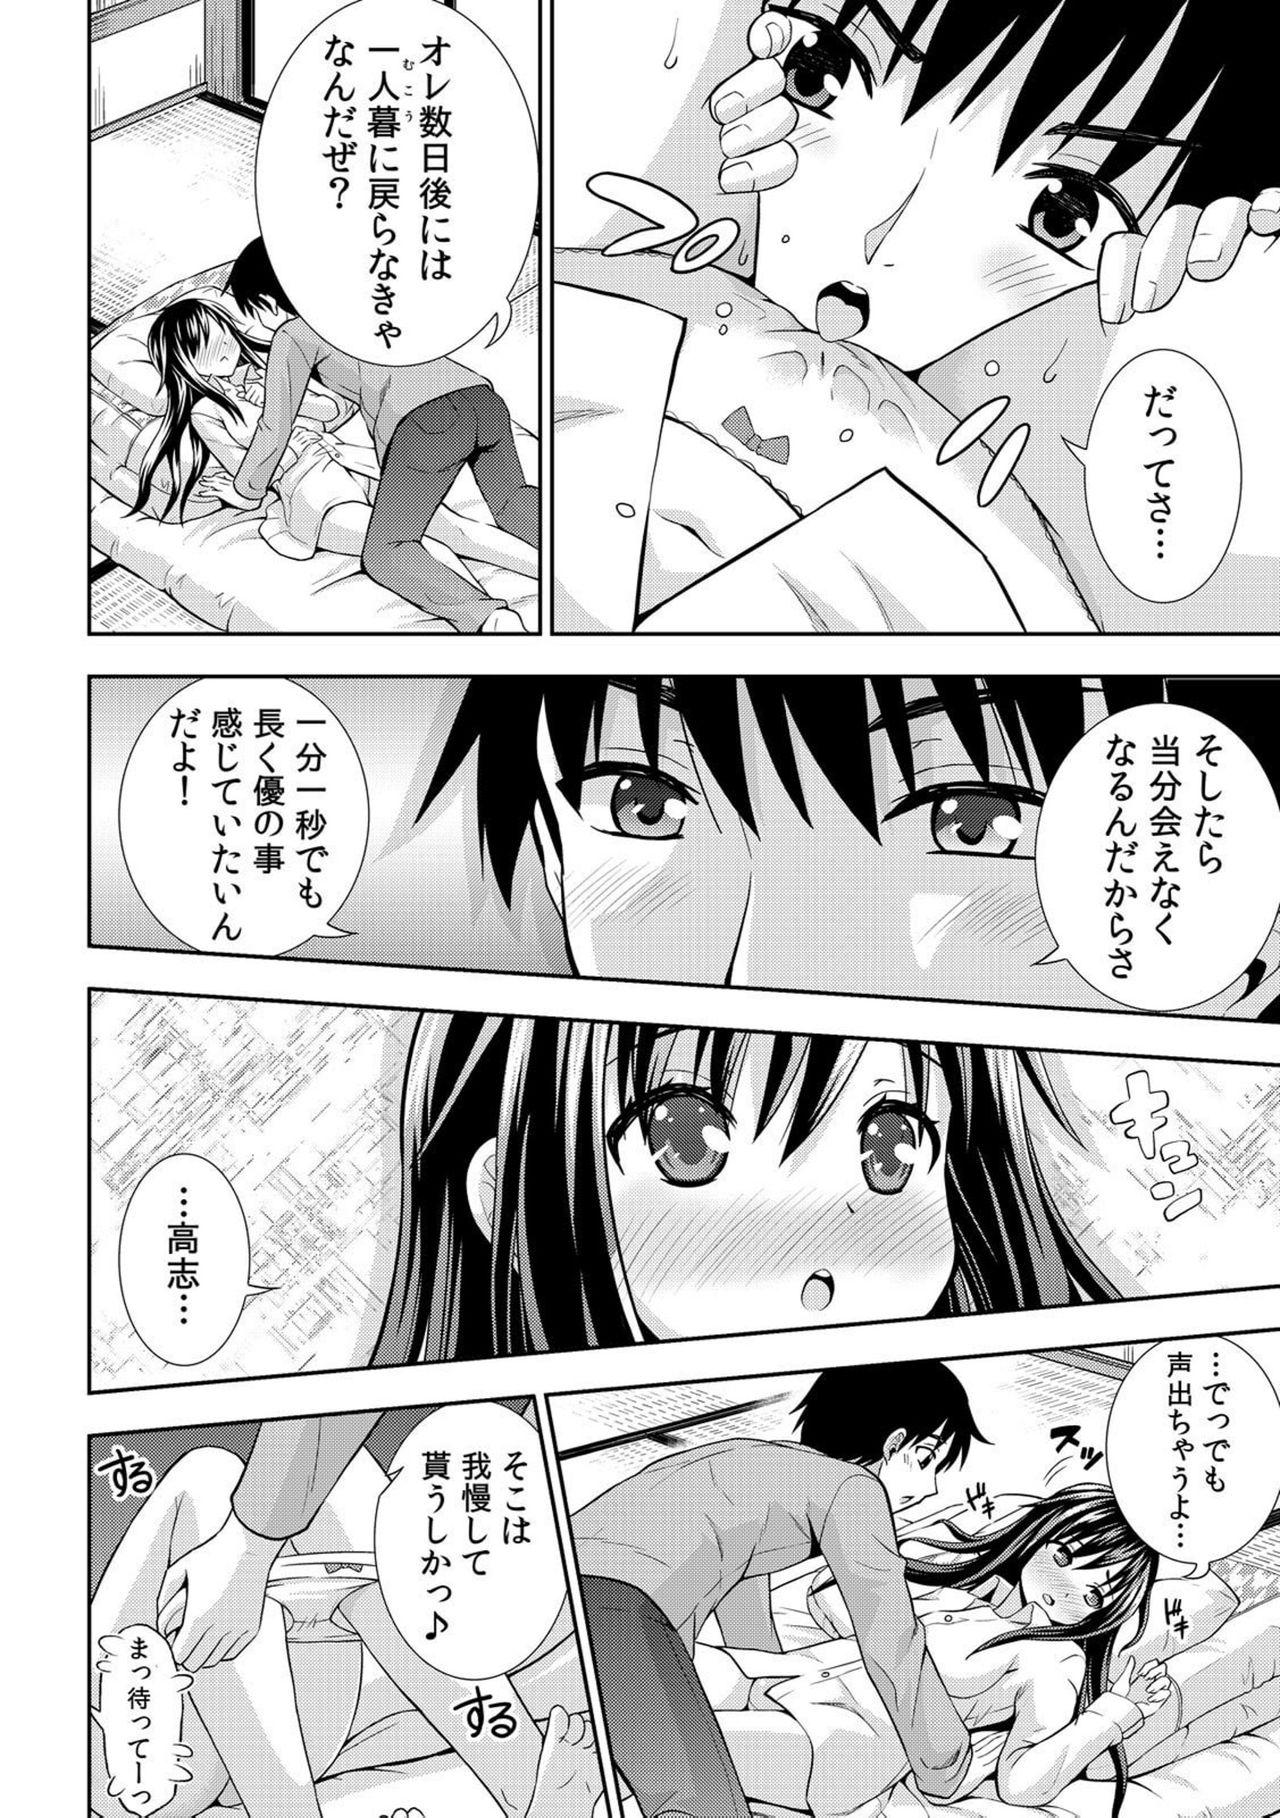 18 Year Old [Marumarusuke] Nurechaukara Itazura Shinaide! ~Apron Sugata no Osananajimi o Ushirokara~ 2 [Digital] Viet Nam - Page 11